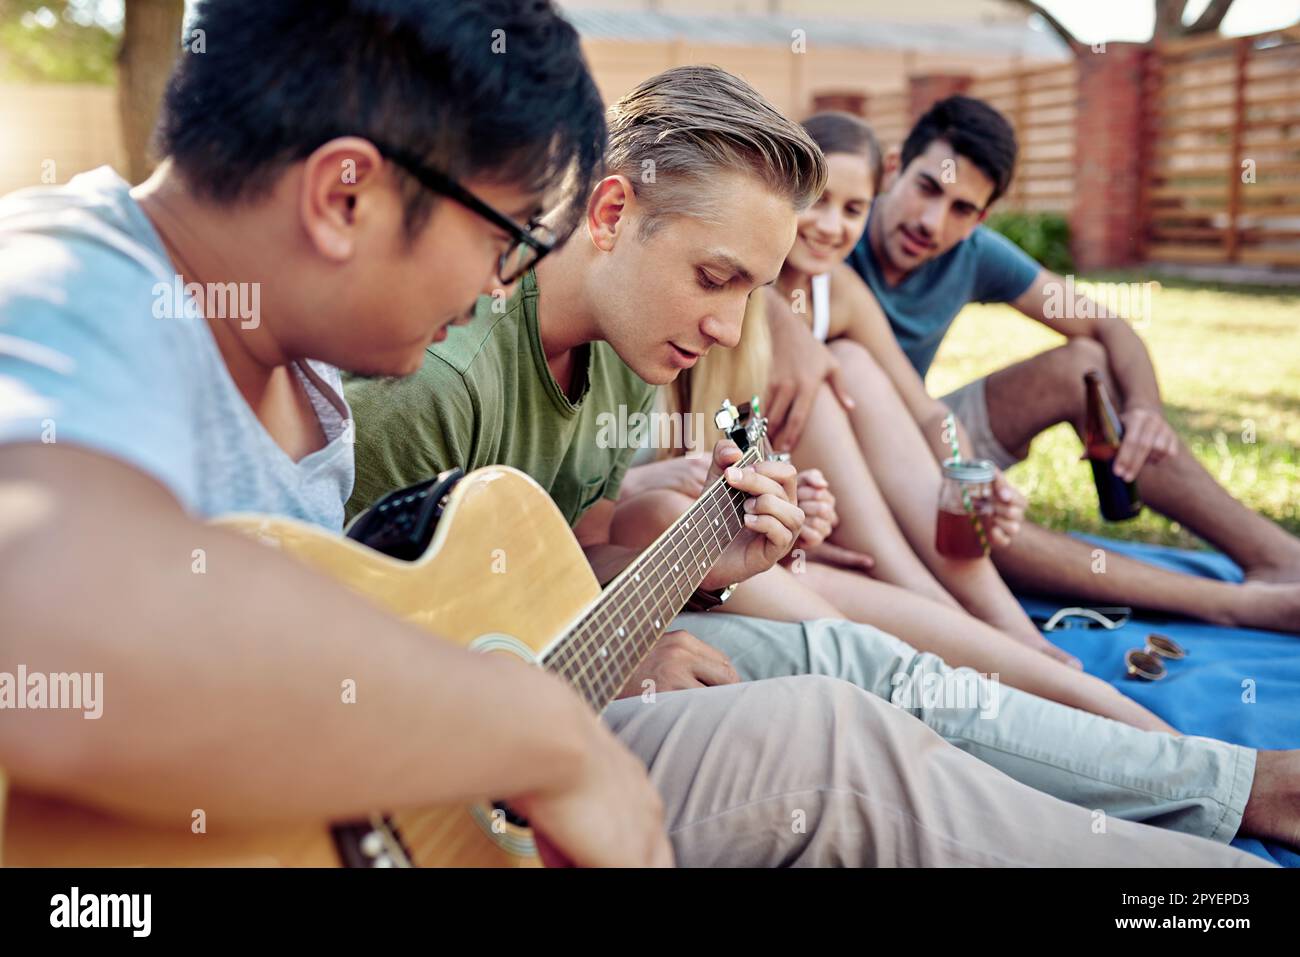 Strimpellimento via durante l'estate. un giovane che suona la chitarra mentre sorsegga qualche drink con i suoi amici fuori nel sole estivo. Foto Stock